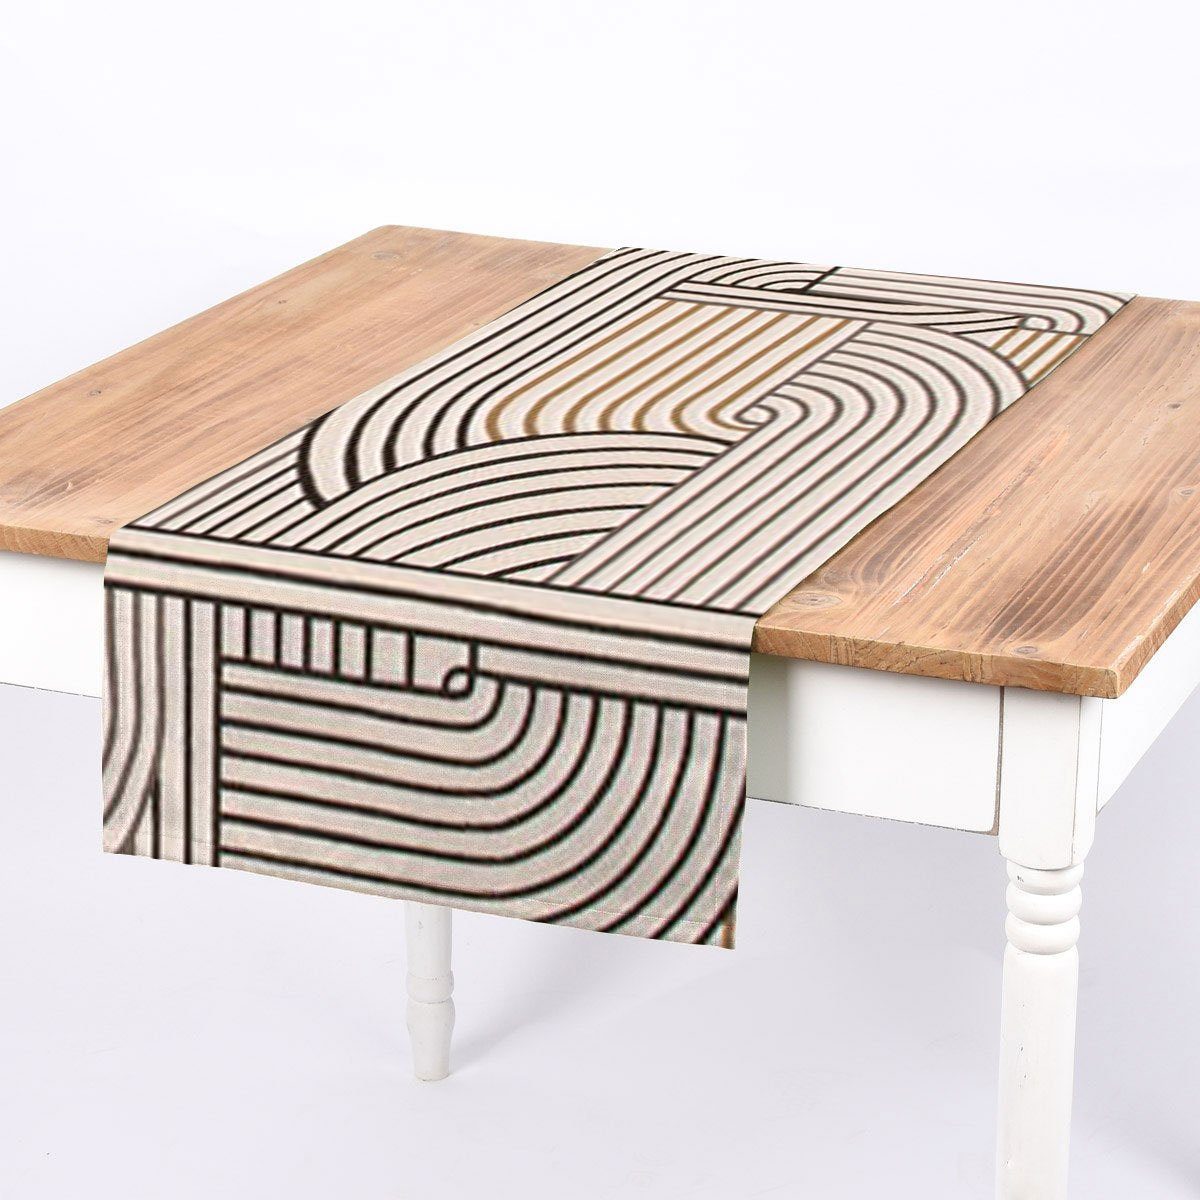 SCHÖNER LEBEN. Tischläufer Tischläufer schwarz Geometrie gold LEBEN., von 40x160cm SCHÖNER handmade natur